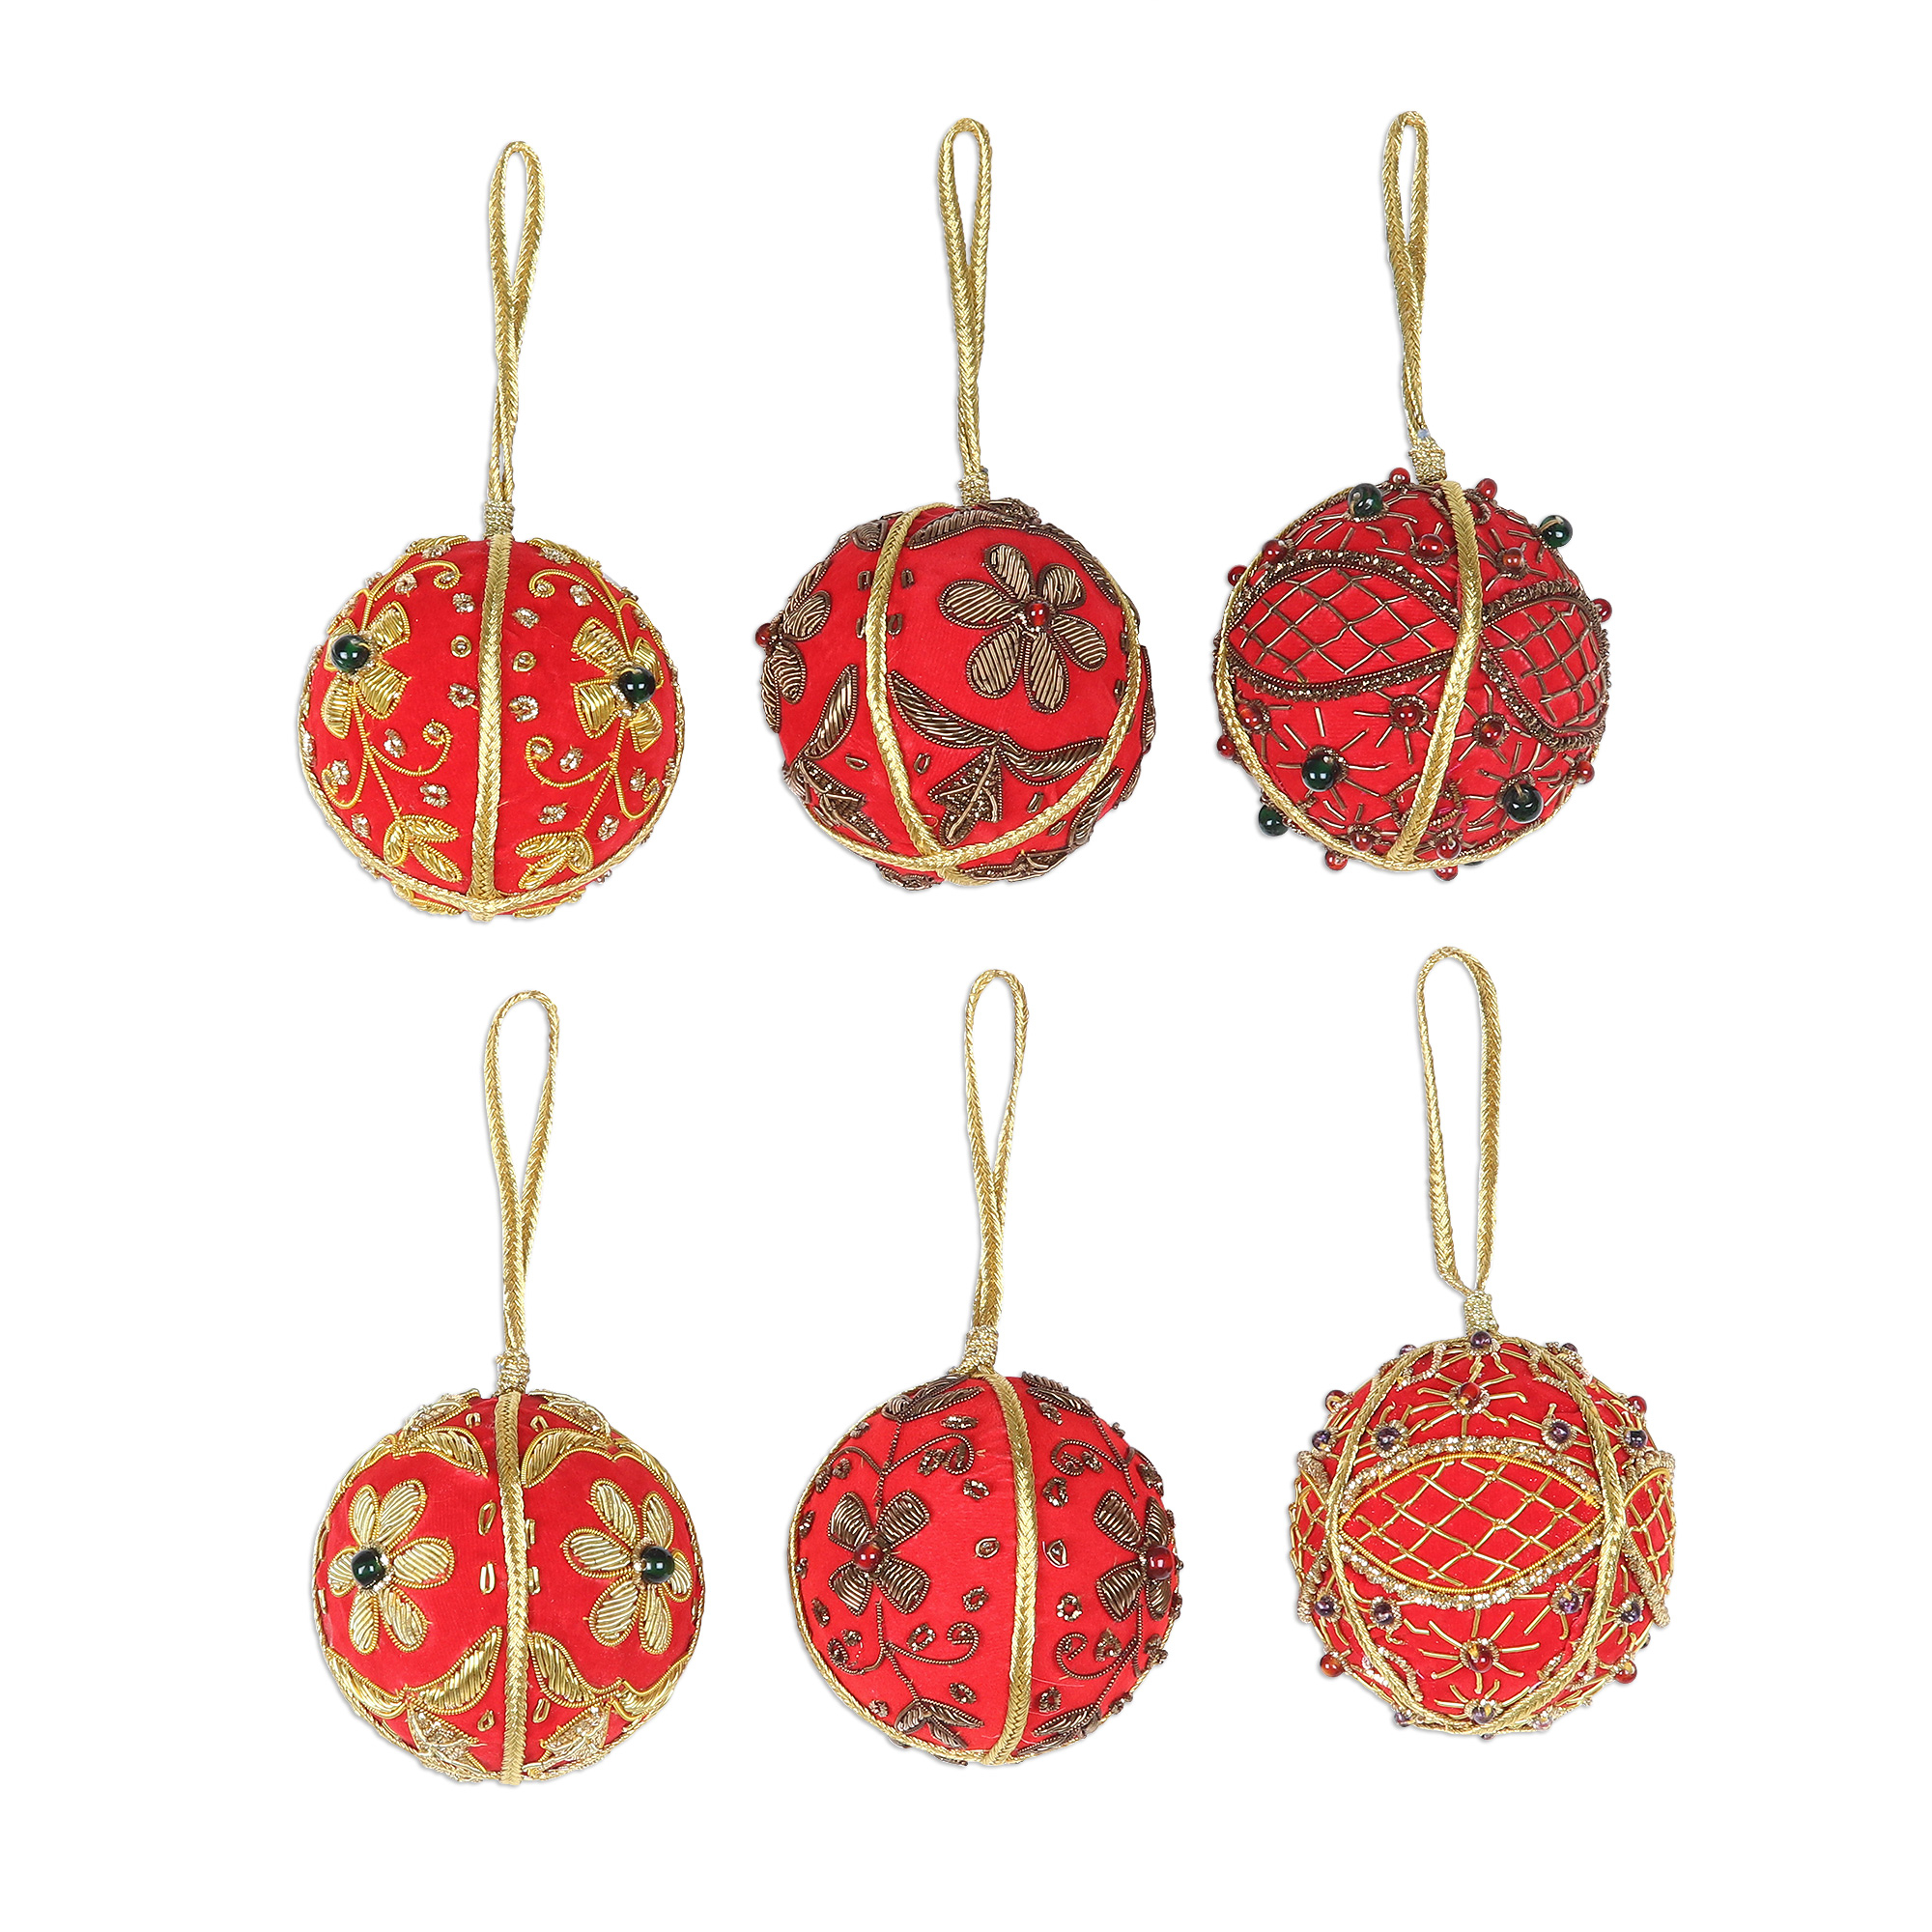 Beaded and Embroidered Velvet Ornaments (Set of 6) - Velvet Holiday ...